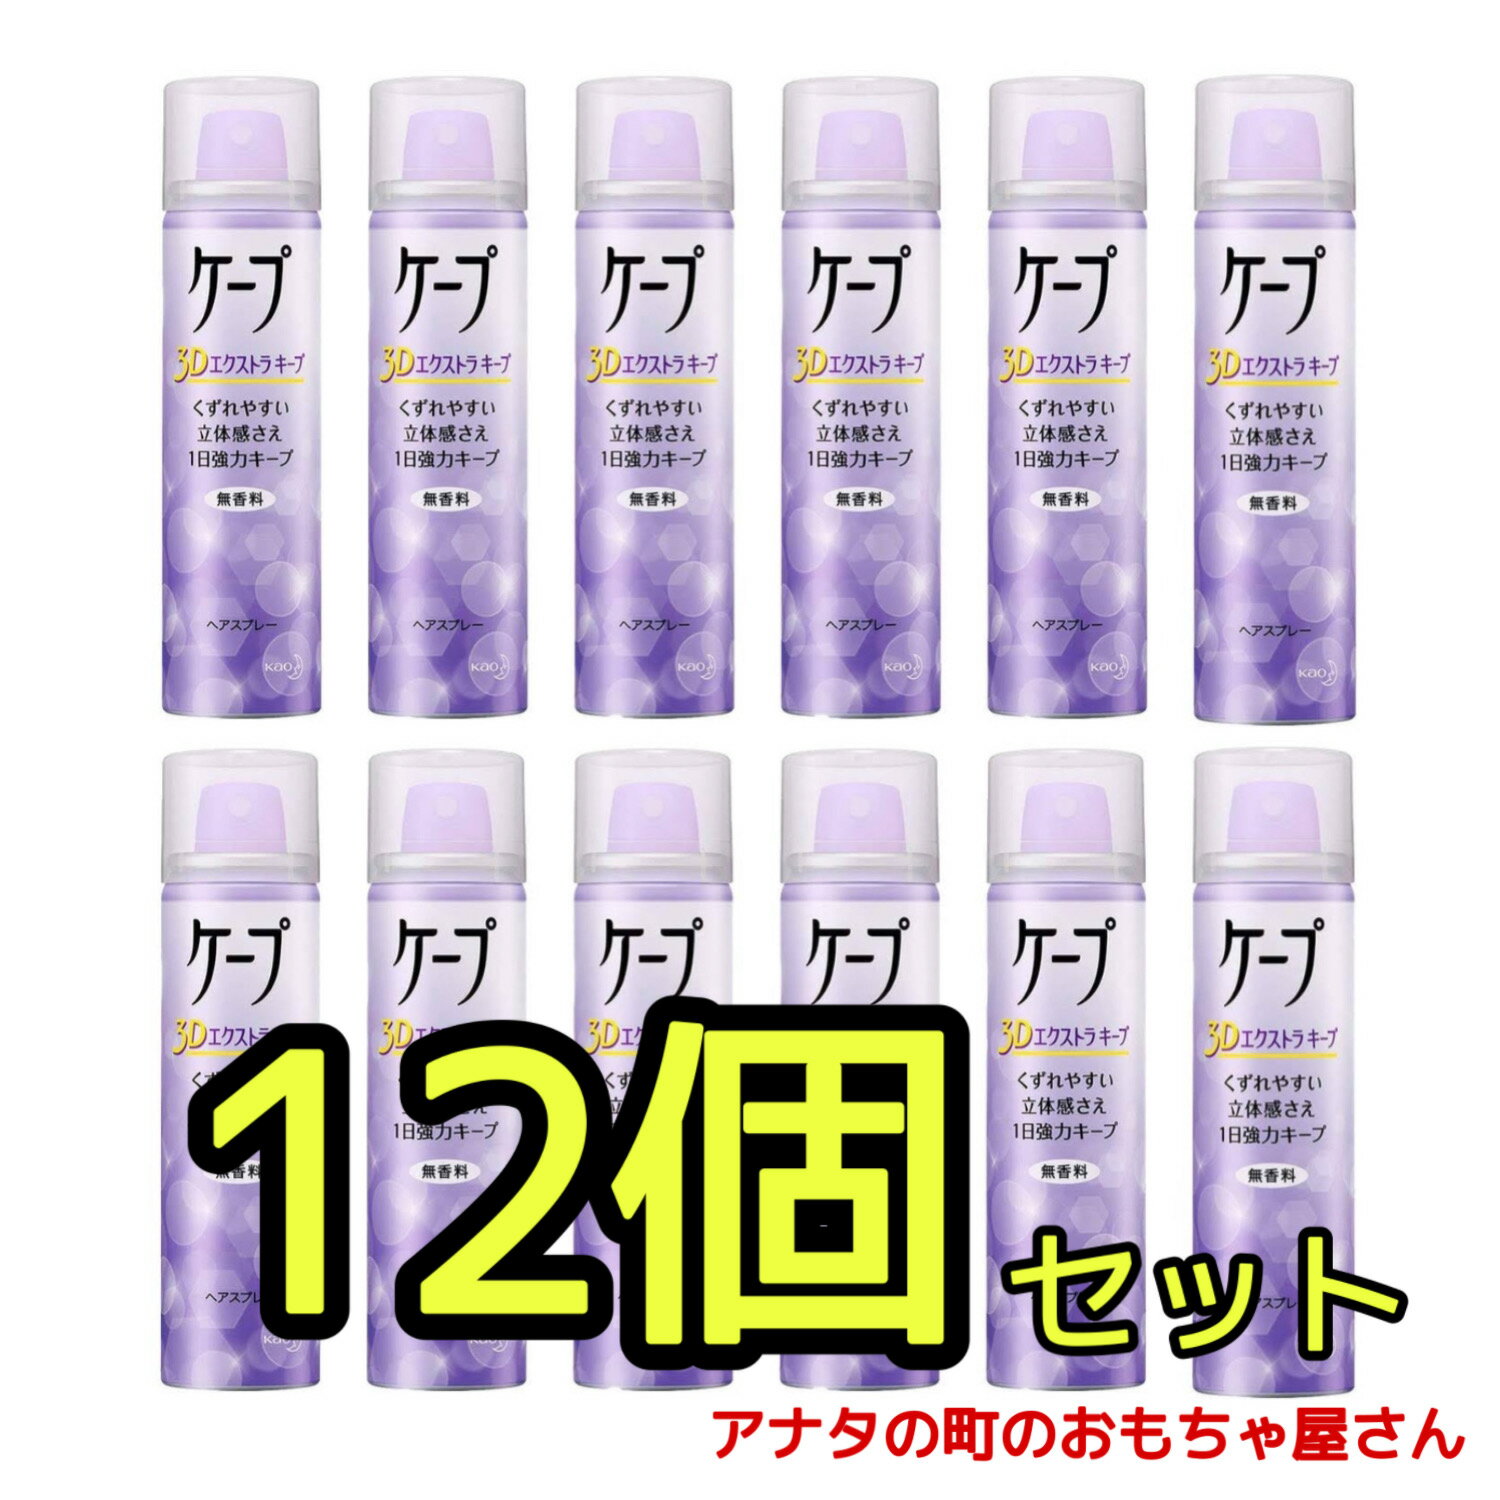 【12個セット】ケープ 3Dエクストラキープ 無香料 ( 50g )/ ヘアスプレーケープ